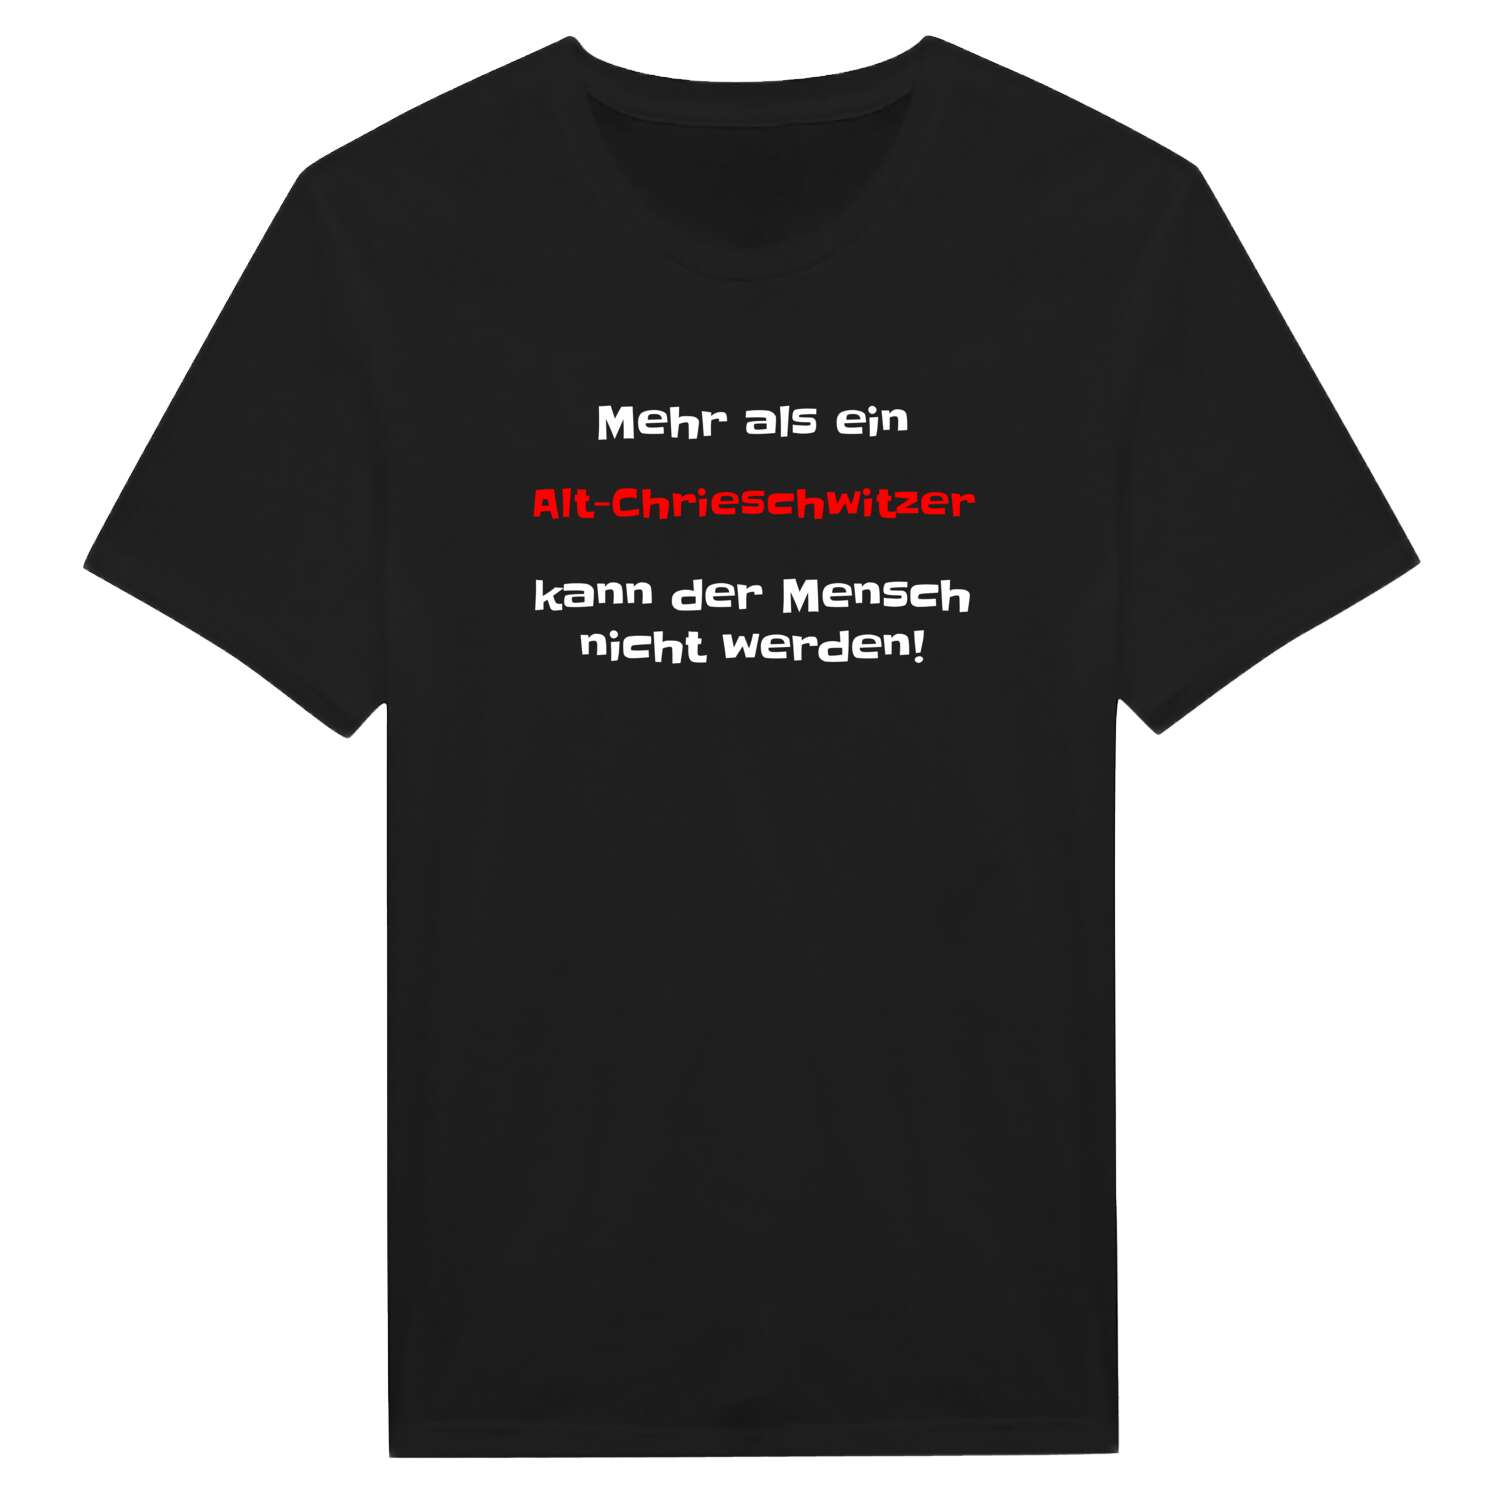 Alt-Chrieschwitz T-Shirt »Mehr als ein«